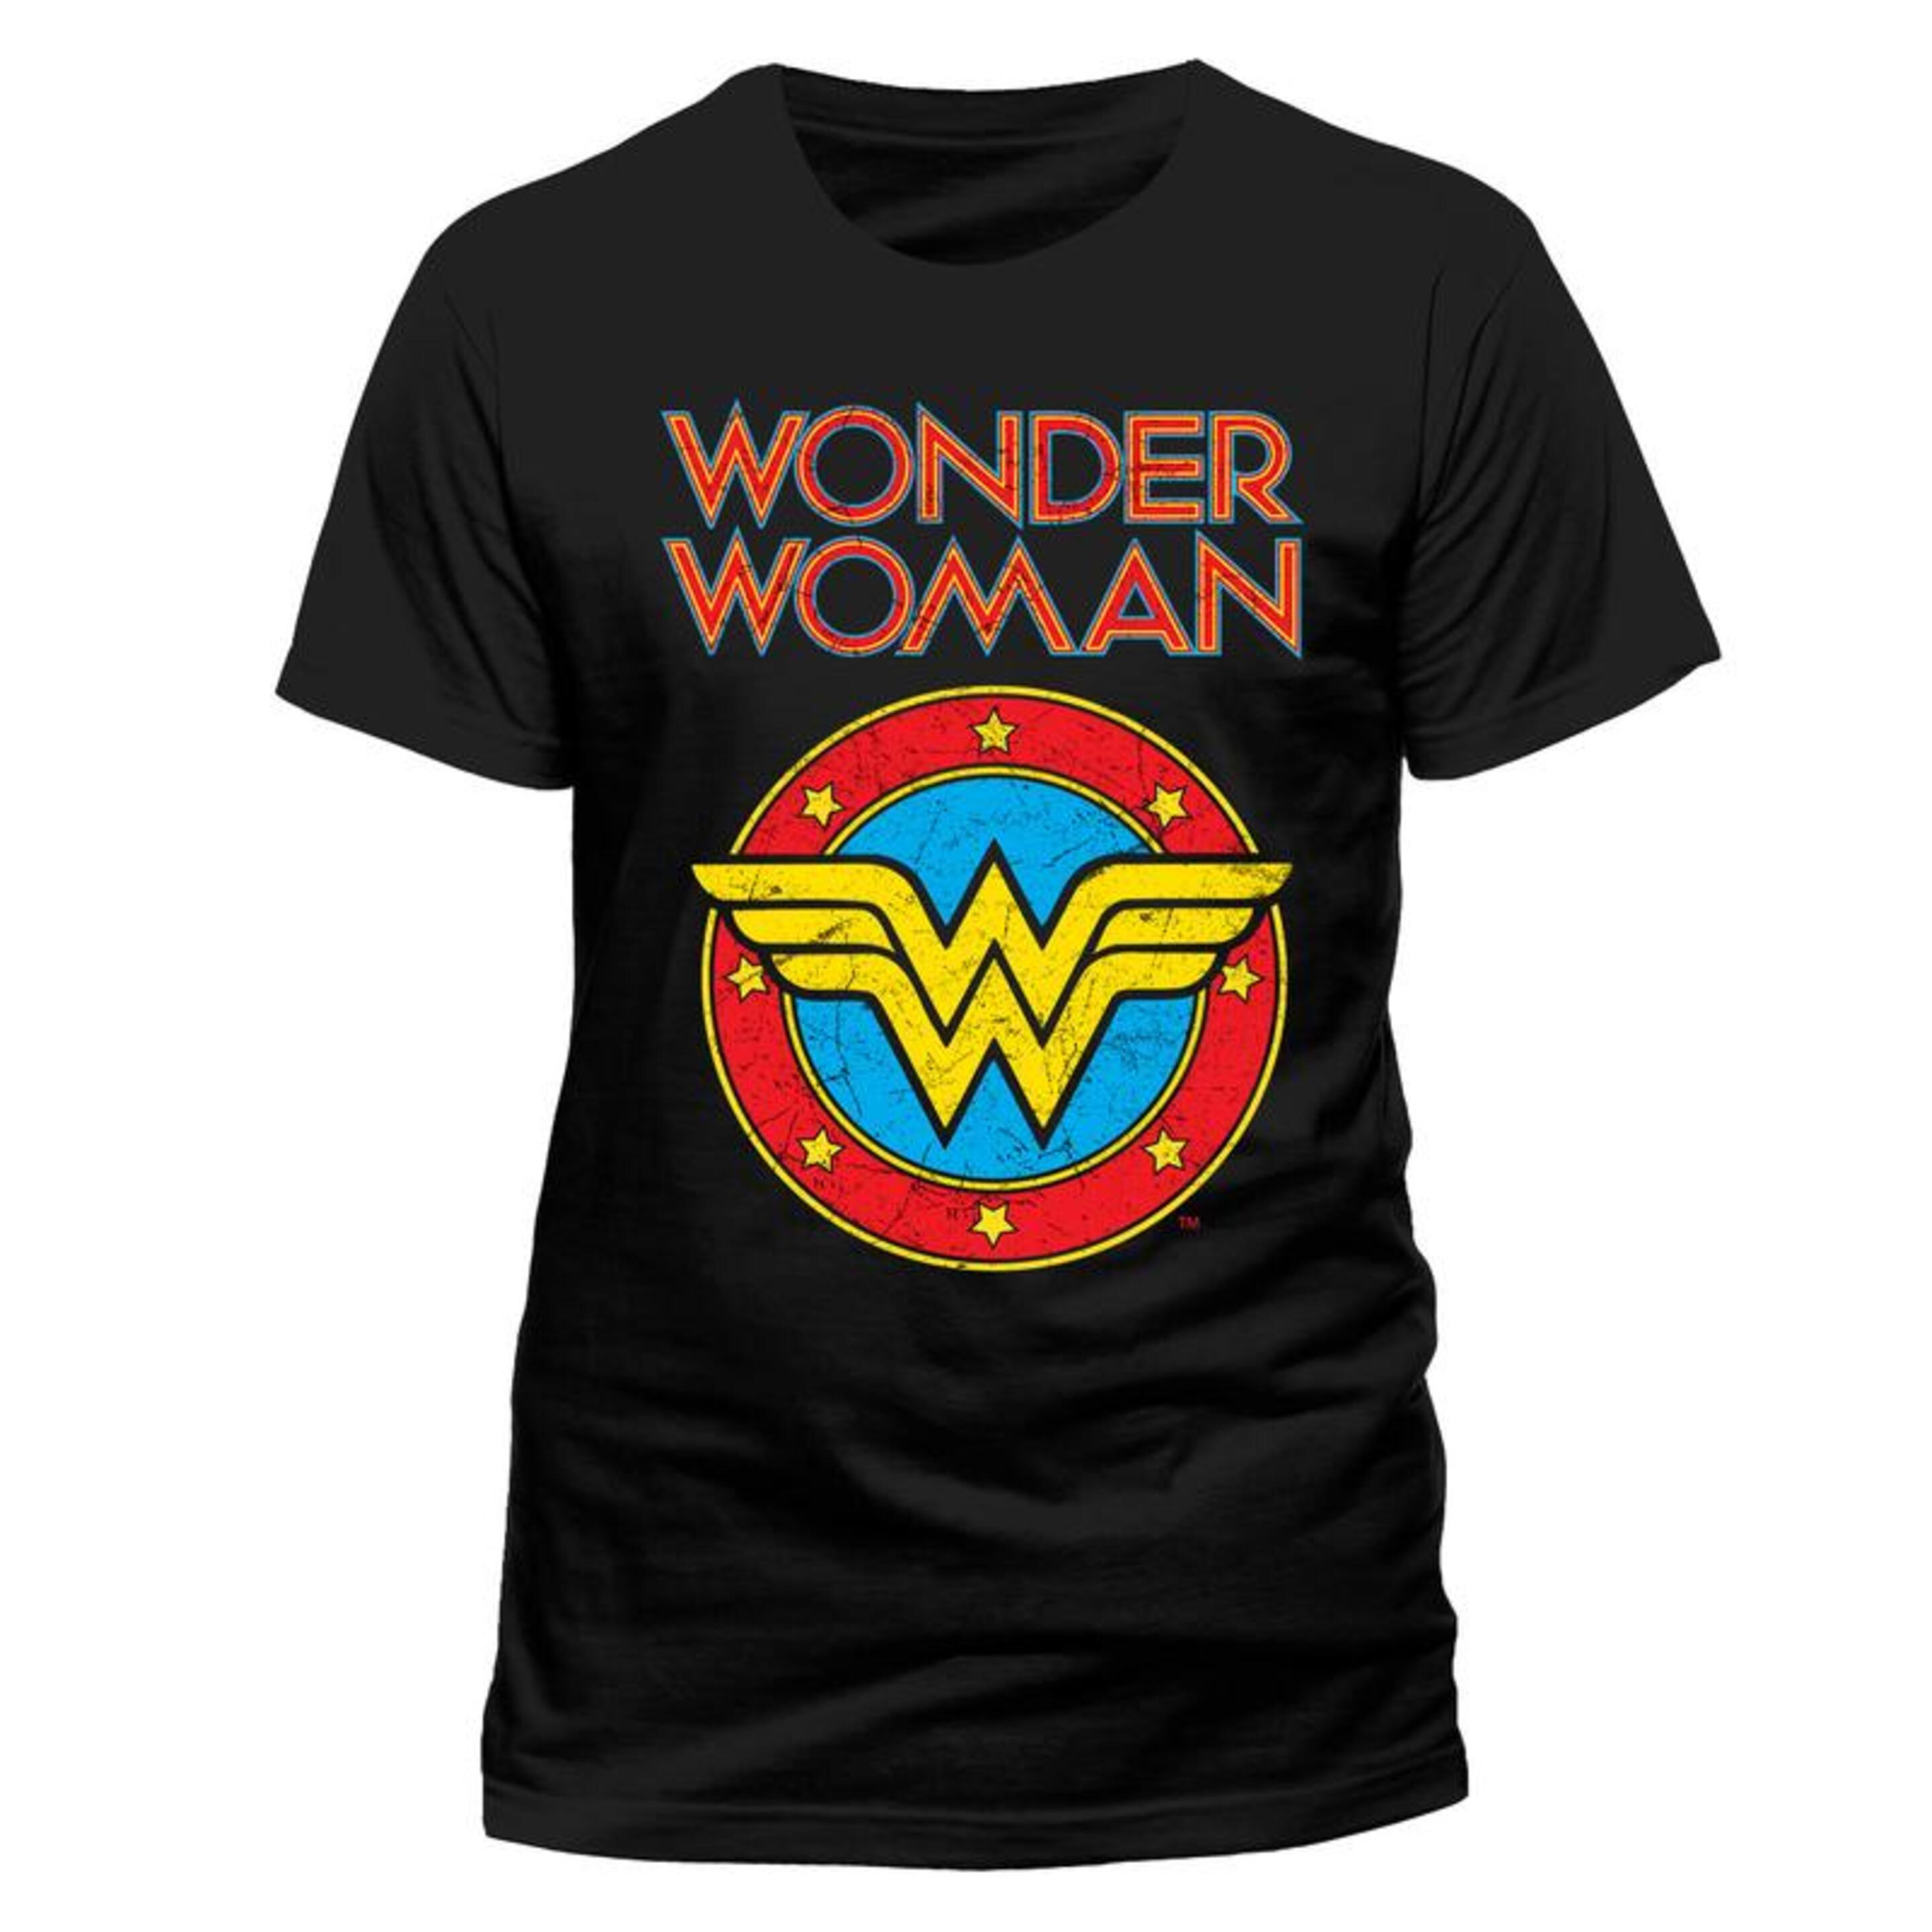 Camiseta Unisex Adult Vintage Wonder Woman